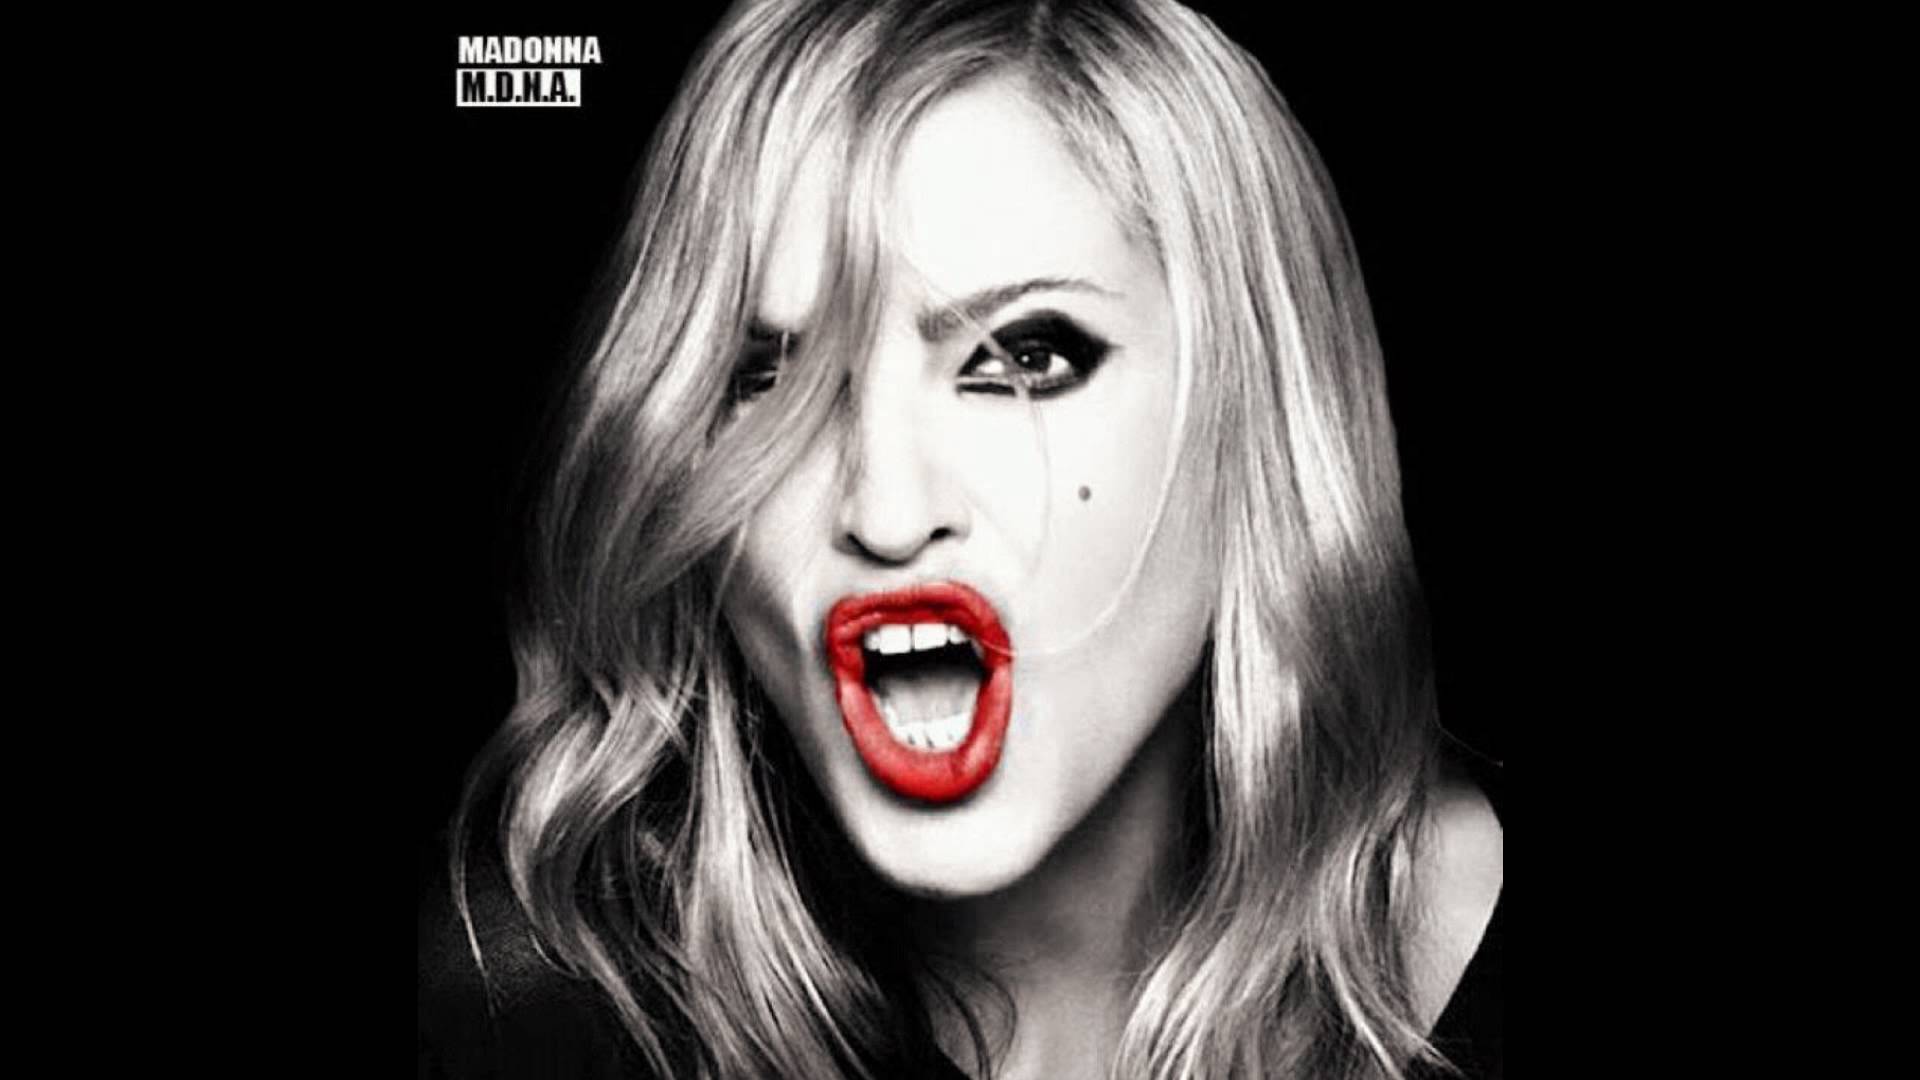 Madonna copia portada Born this way de Lady gaga (HD) - YouTube